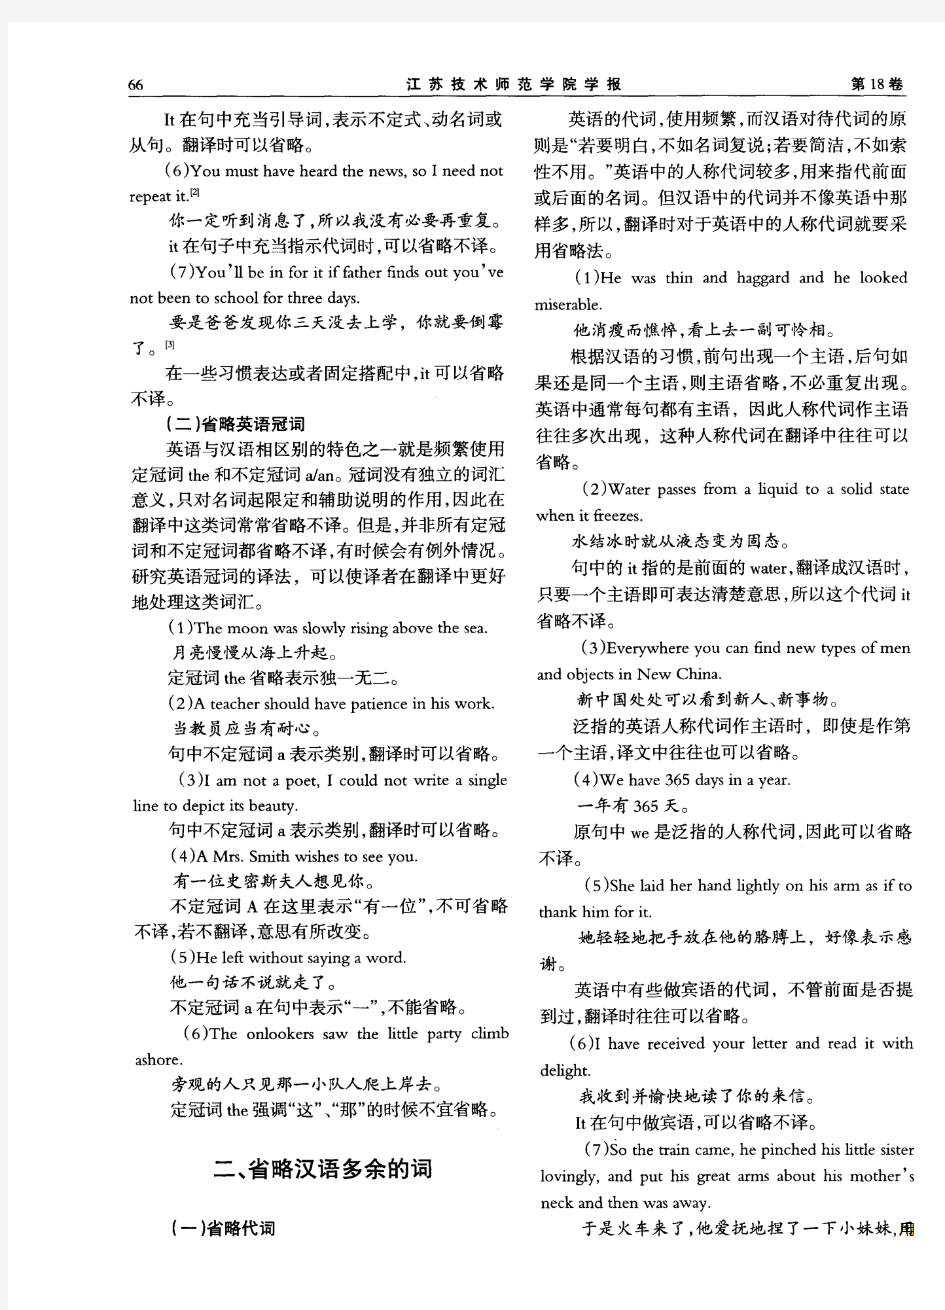 英汉翻译过程中省略法的应用